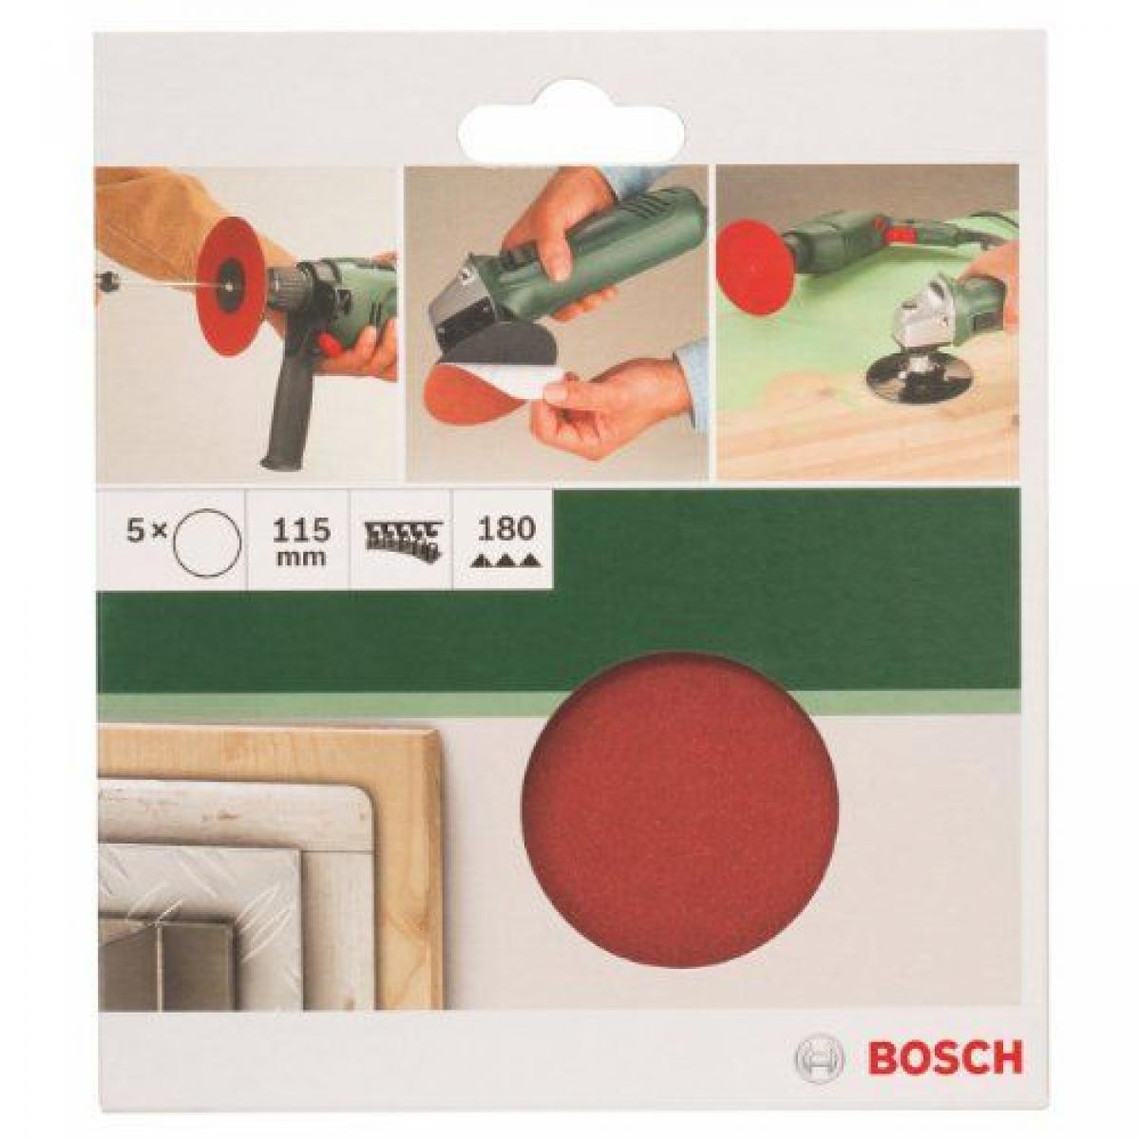 Bosch 2609256B40 Disques abrasifs papier pour Meuleuses angulaires et perceuses Système auto-agrippant Diamètre 115 mm grain 180 Lot de 5 feuilles 